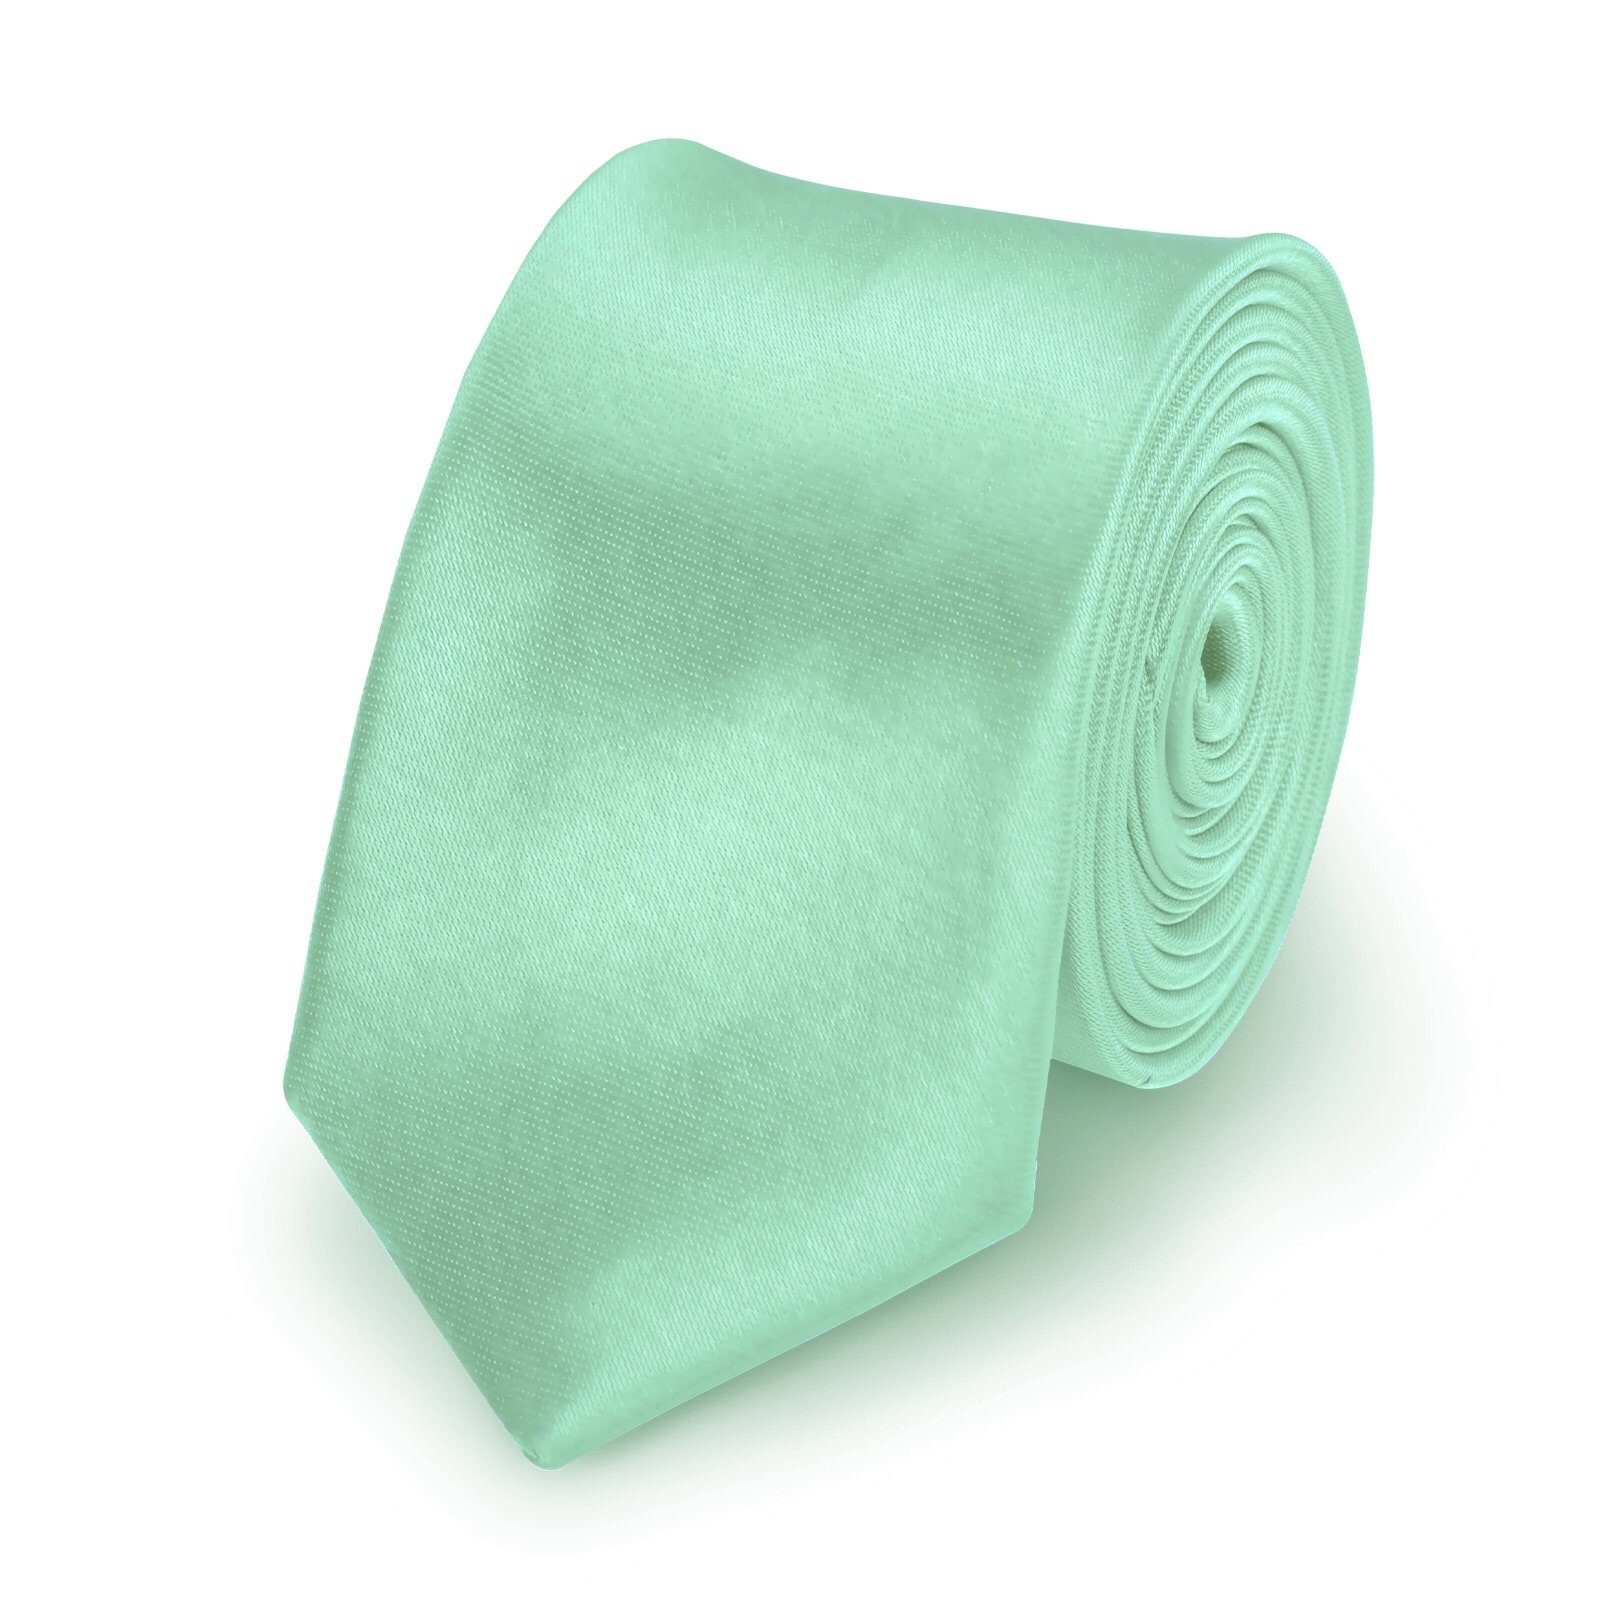 StickandShine Krawatte Krawatte Fliege Einstecktuch als SET 3 Teilig Uni aus Polyester 5 cm Breite / 148 cm Länge Einfarbig modern für Hochzeit Anzug (Krawatte Fliege und Einstecktuch, Spar-SET, 3 Teilig) SET Uni Mint